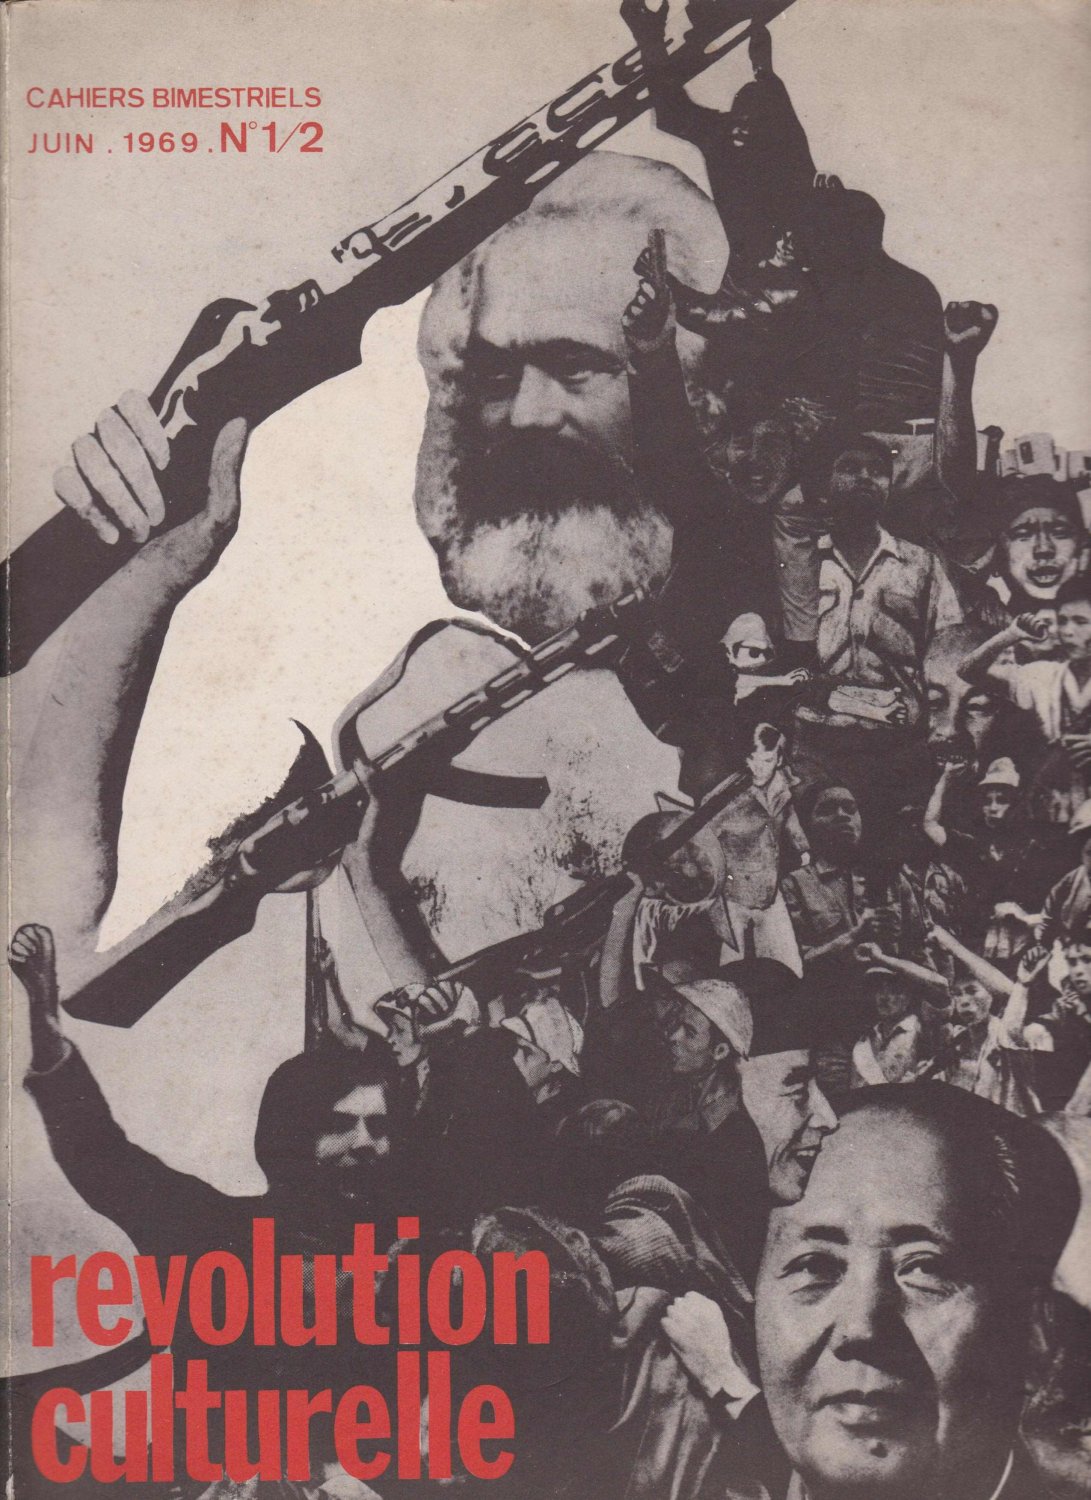   revolution culturelle. Cahiers Bimestriels. Juin 1969. No 1/2.  Directeur: M. Burkhalter. 